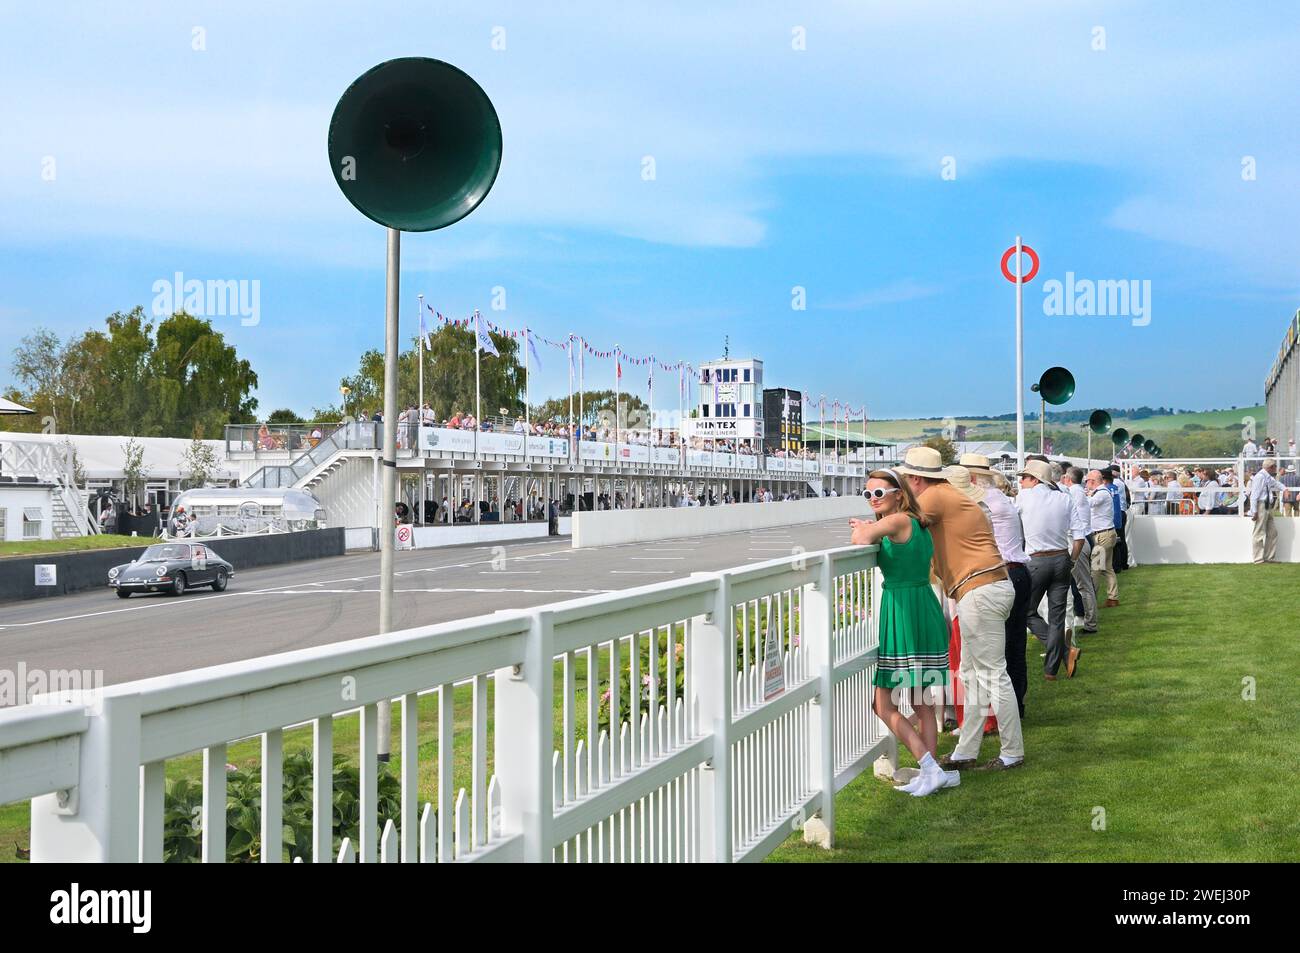 Spectateurs sur le circuit de course automobile Goodwood Revival. Jeune femme en robe verte plissée, lunettes de soleil blanches et bandeau typique de la mode rétro. Banque D'Images